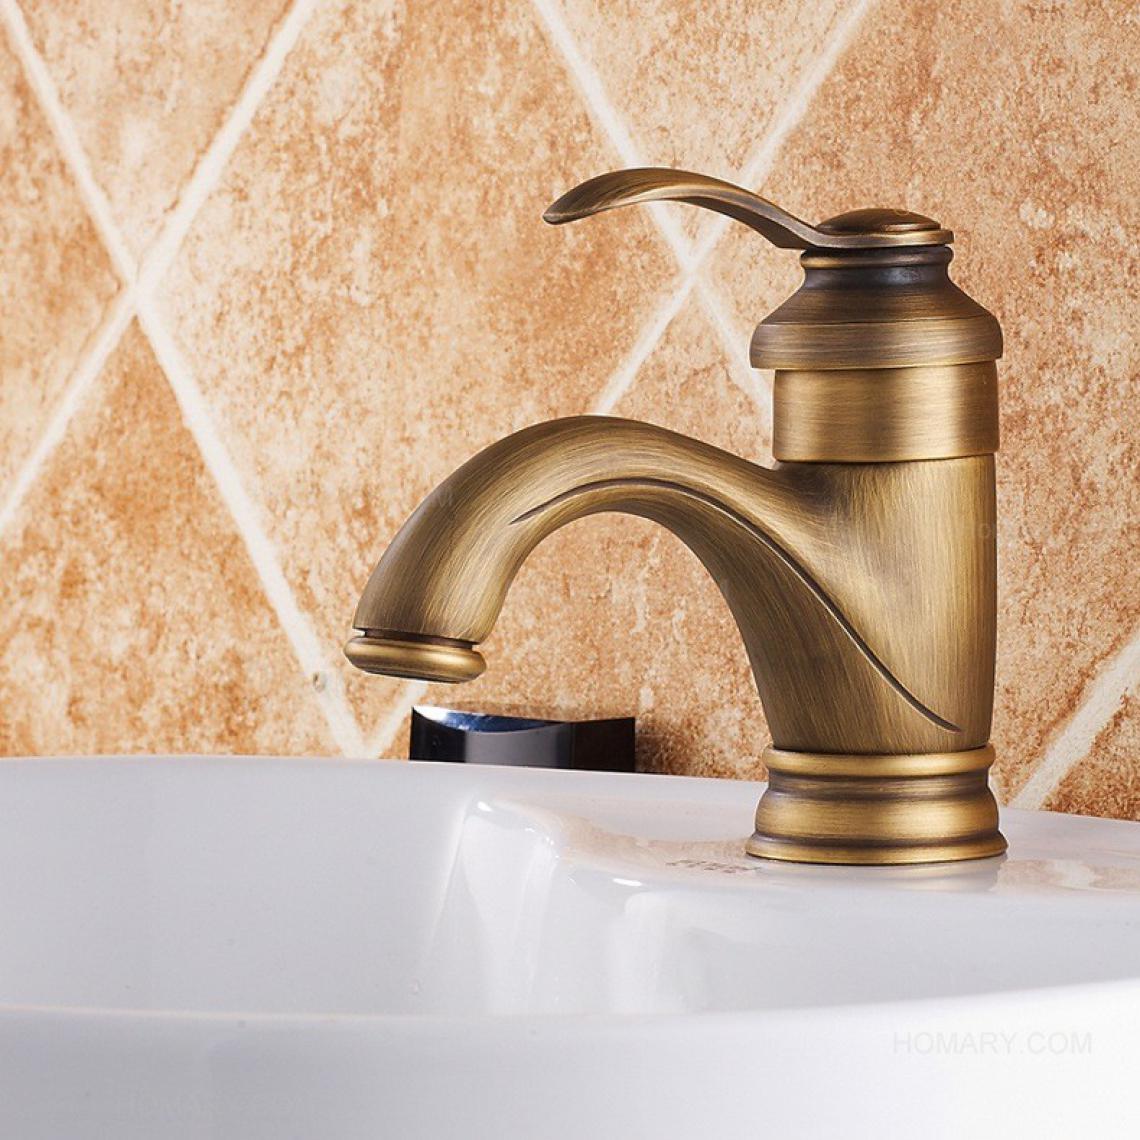 Kroos - Robinet lavabo mitigeur classique à diverses finitions bronze - Robinet de lavabo